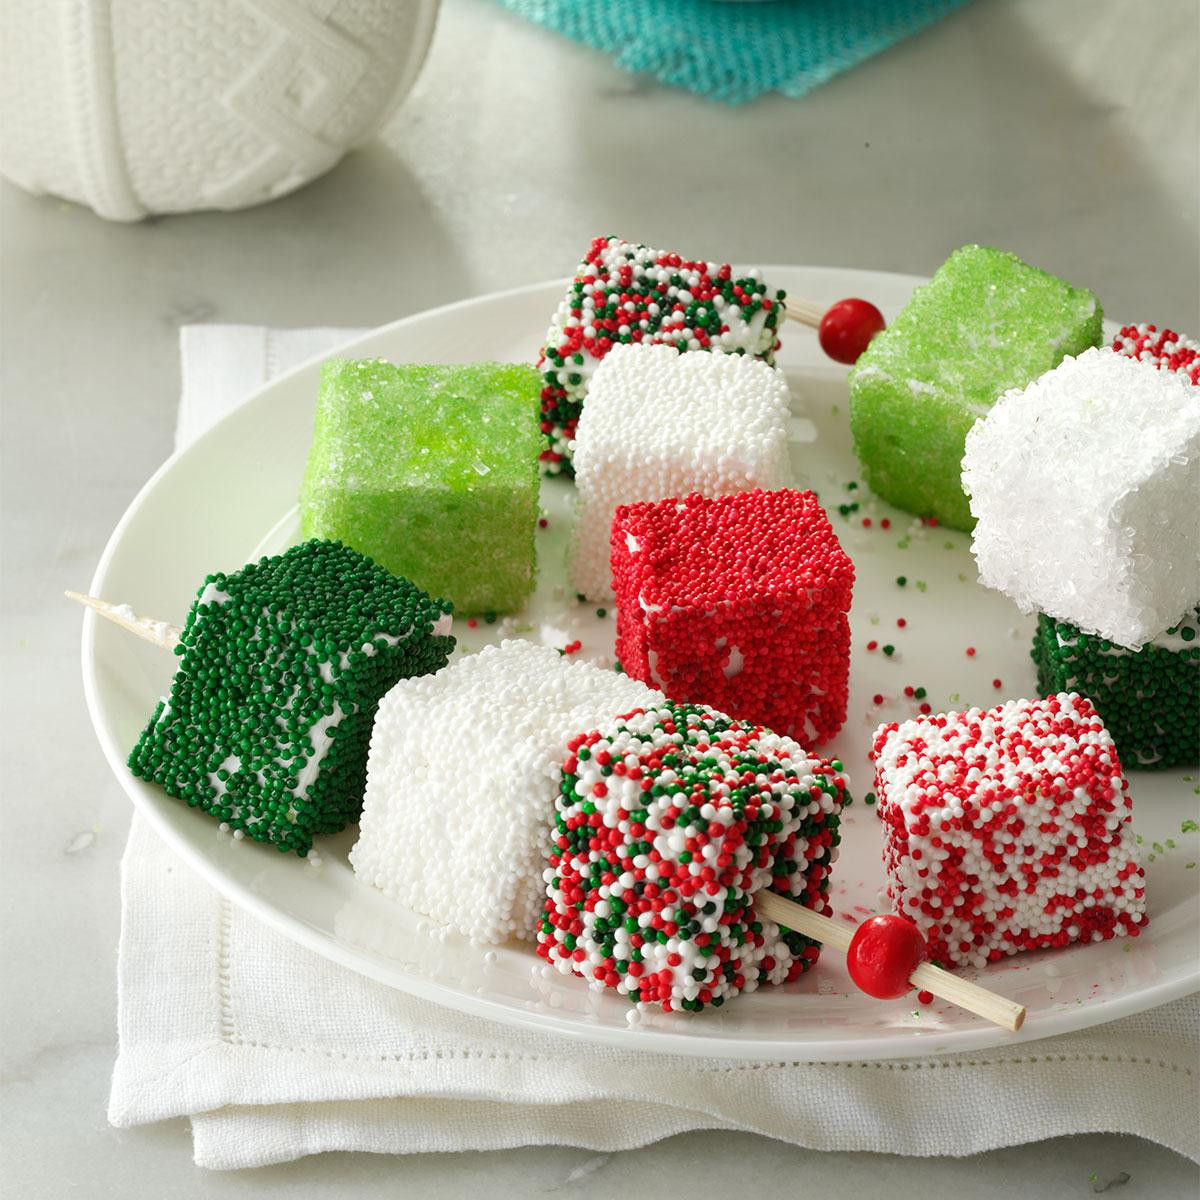 Marshmallow Recipes For Kids
 Homemade Holiday Marshmallows Recipe